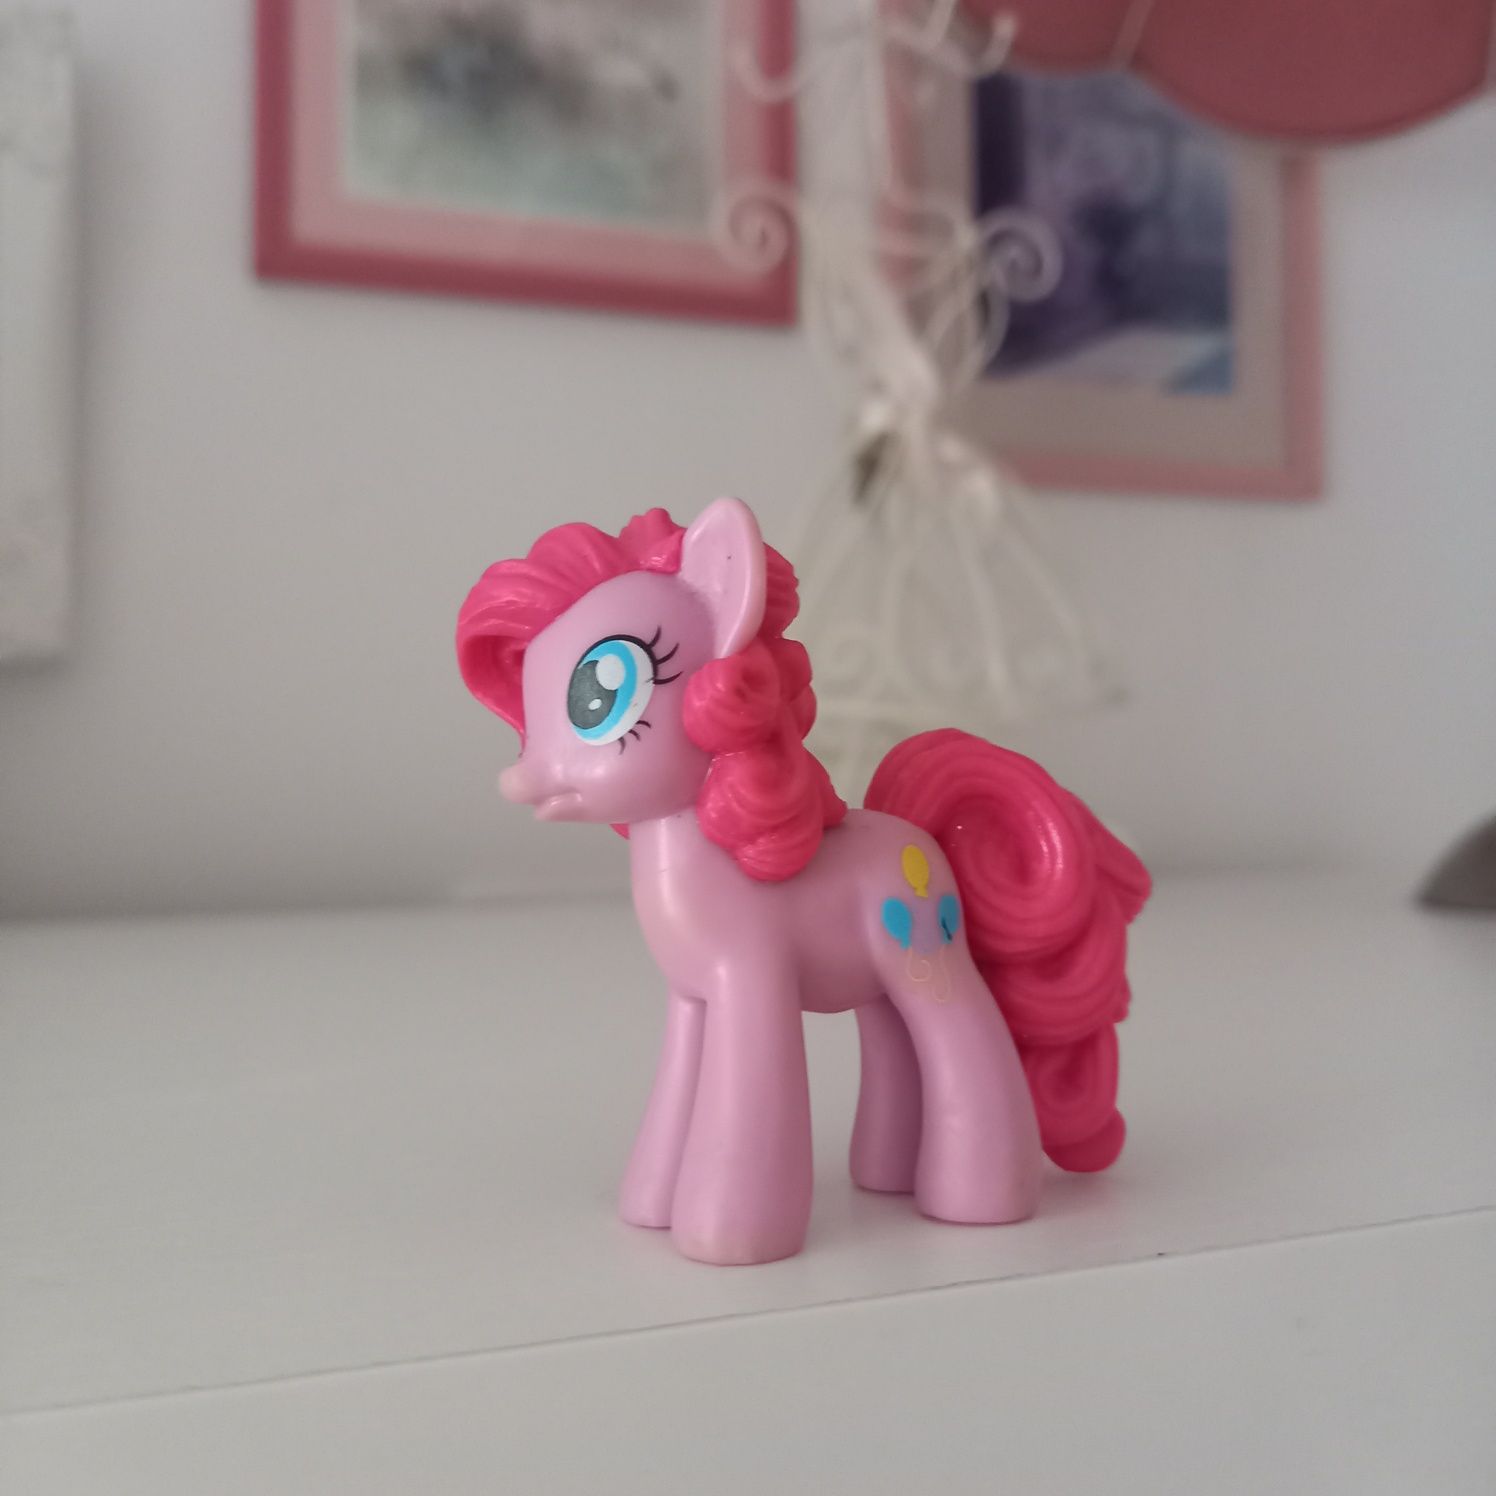 Konik kucyk Hasbro różowy figurka kolekcjonerska mały gumowy